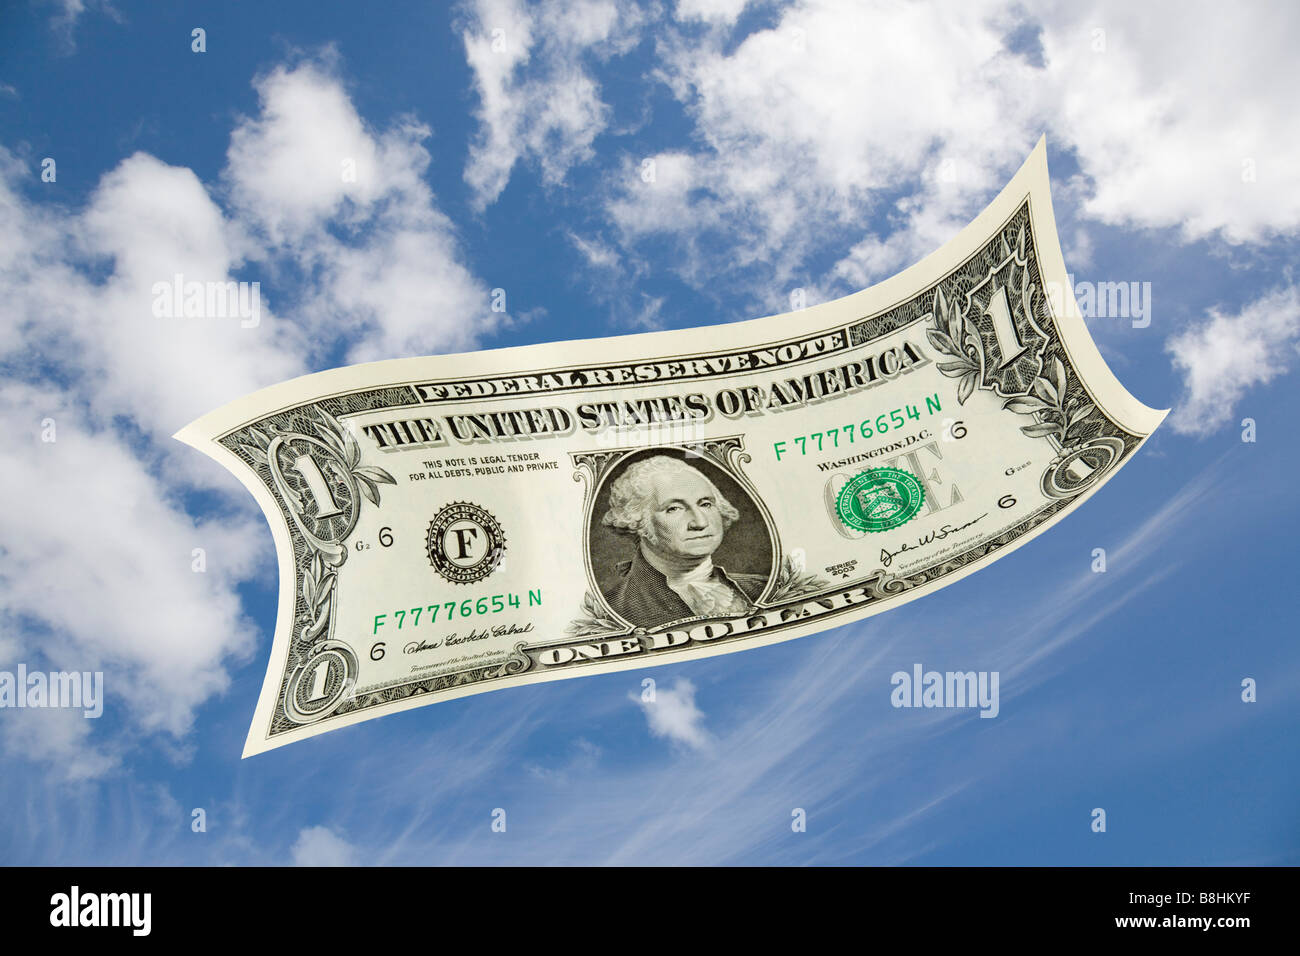 US One Dollar facture $ flottant chute dans le ciel bleu Banque D'Images